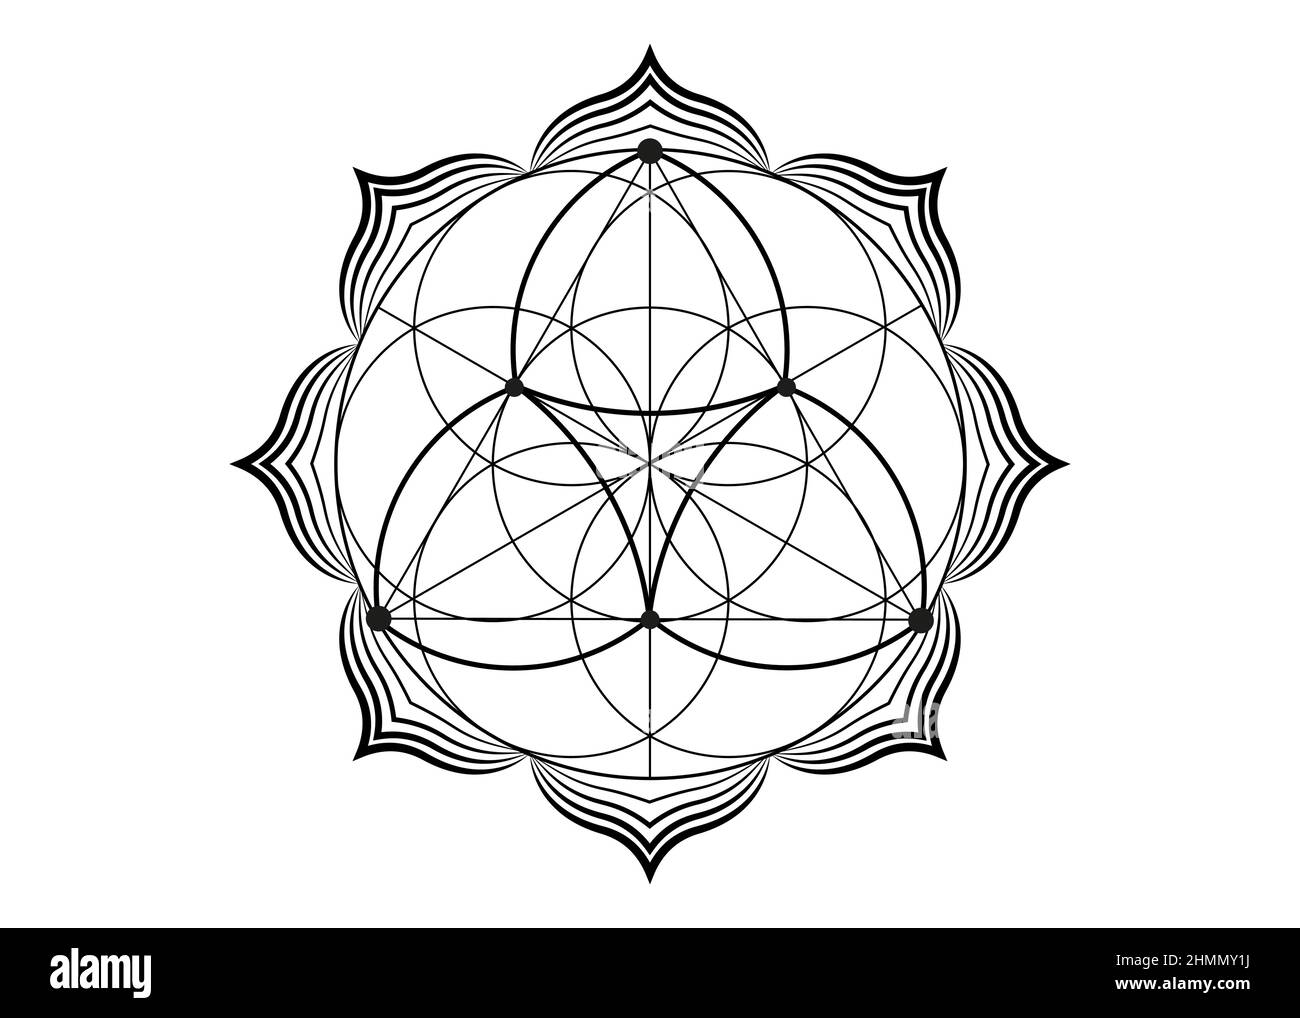 Seme fiore della vita icona di loto, yantra mandala geometria sacra, tatuaggio simbolo di armonia ed equilibrio. Talismano mistica, vettore linee nere isolato o Illustrazione Vettoriale